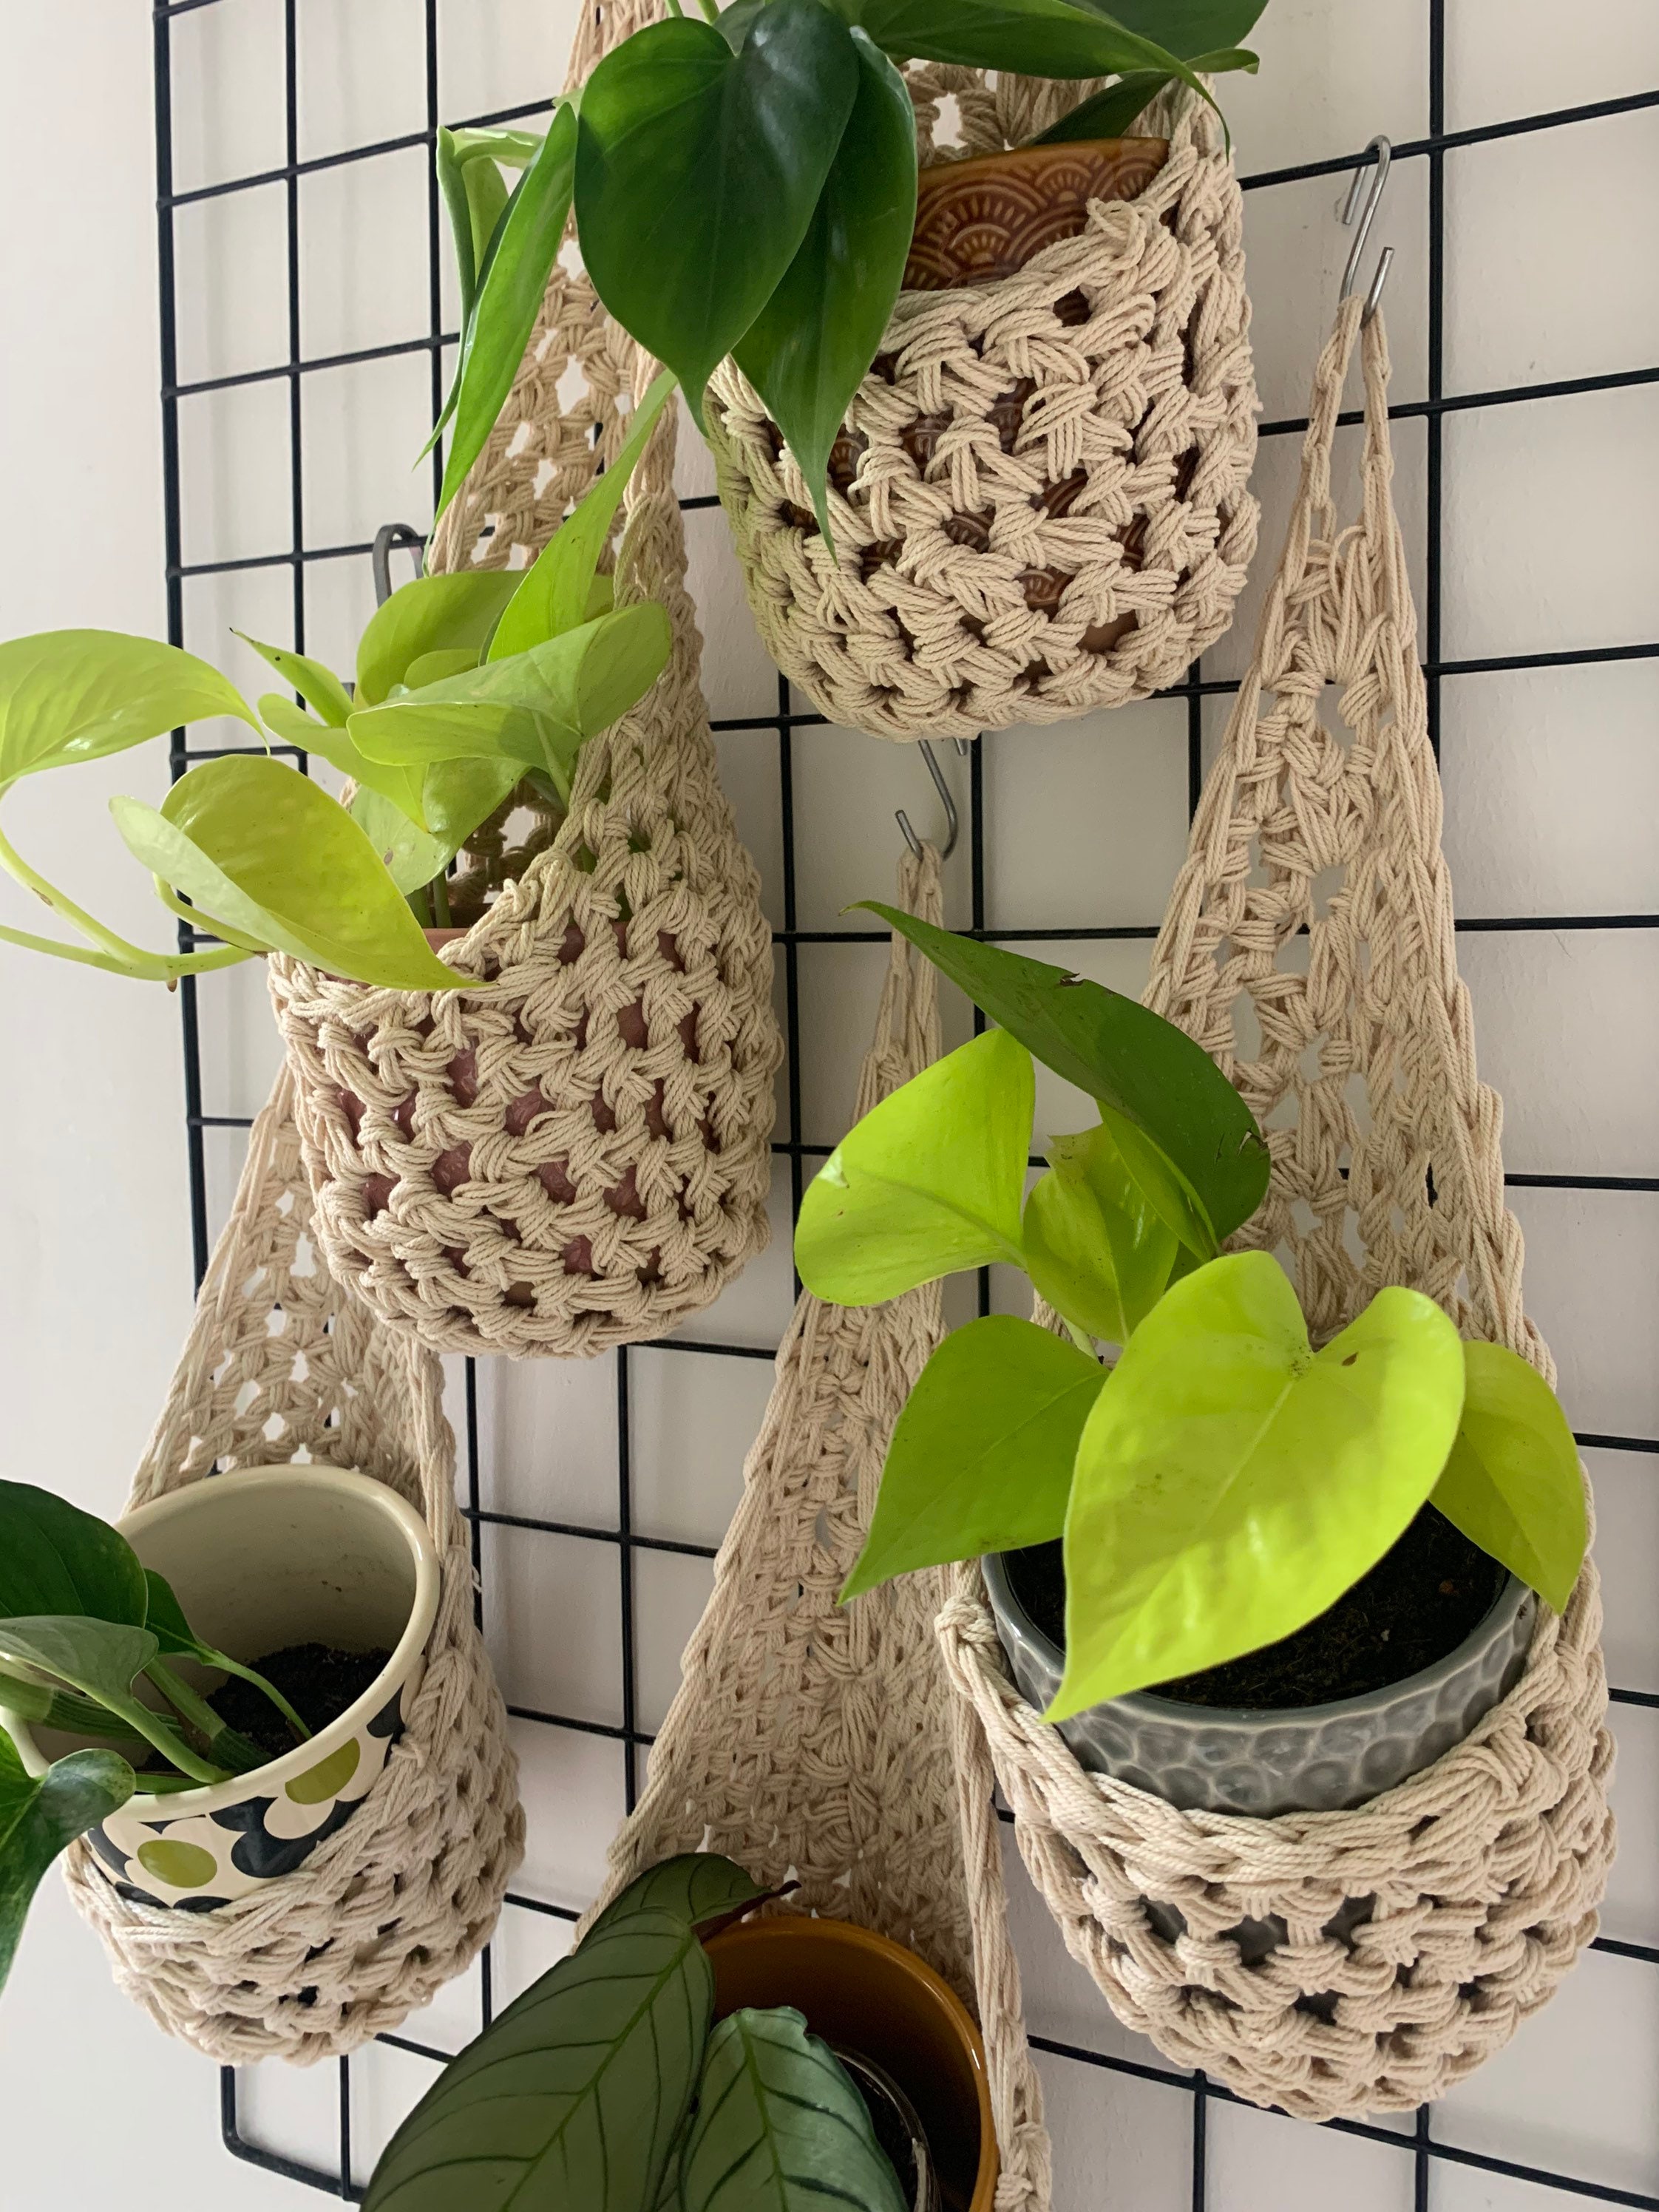 Macrame DIY Small Plant Hanger Kit for Beginners, Birthday Gift